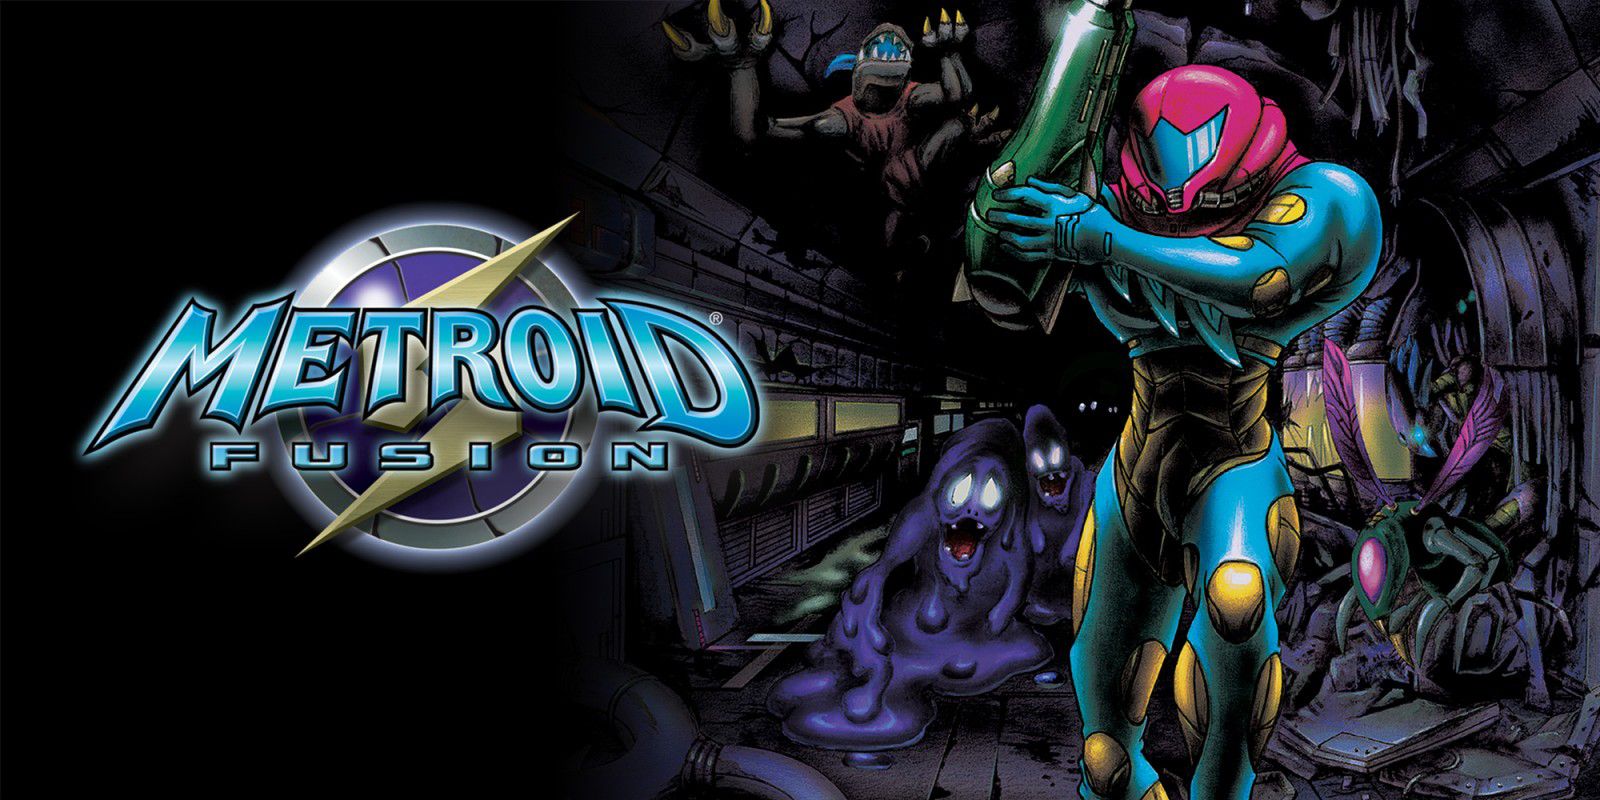 Samus Aran from Metroid Fusion